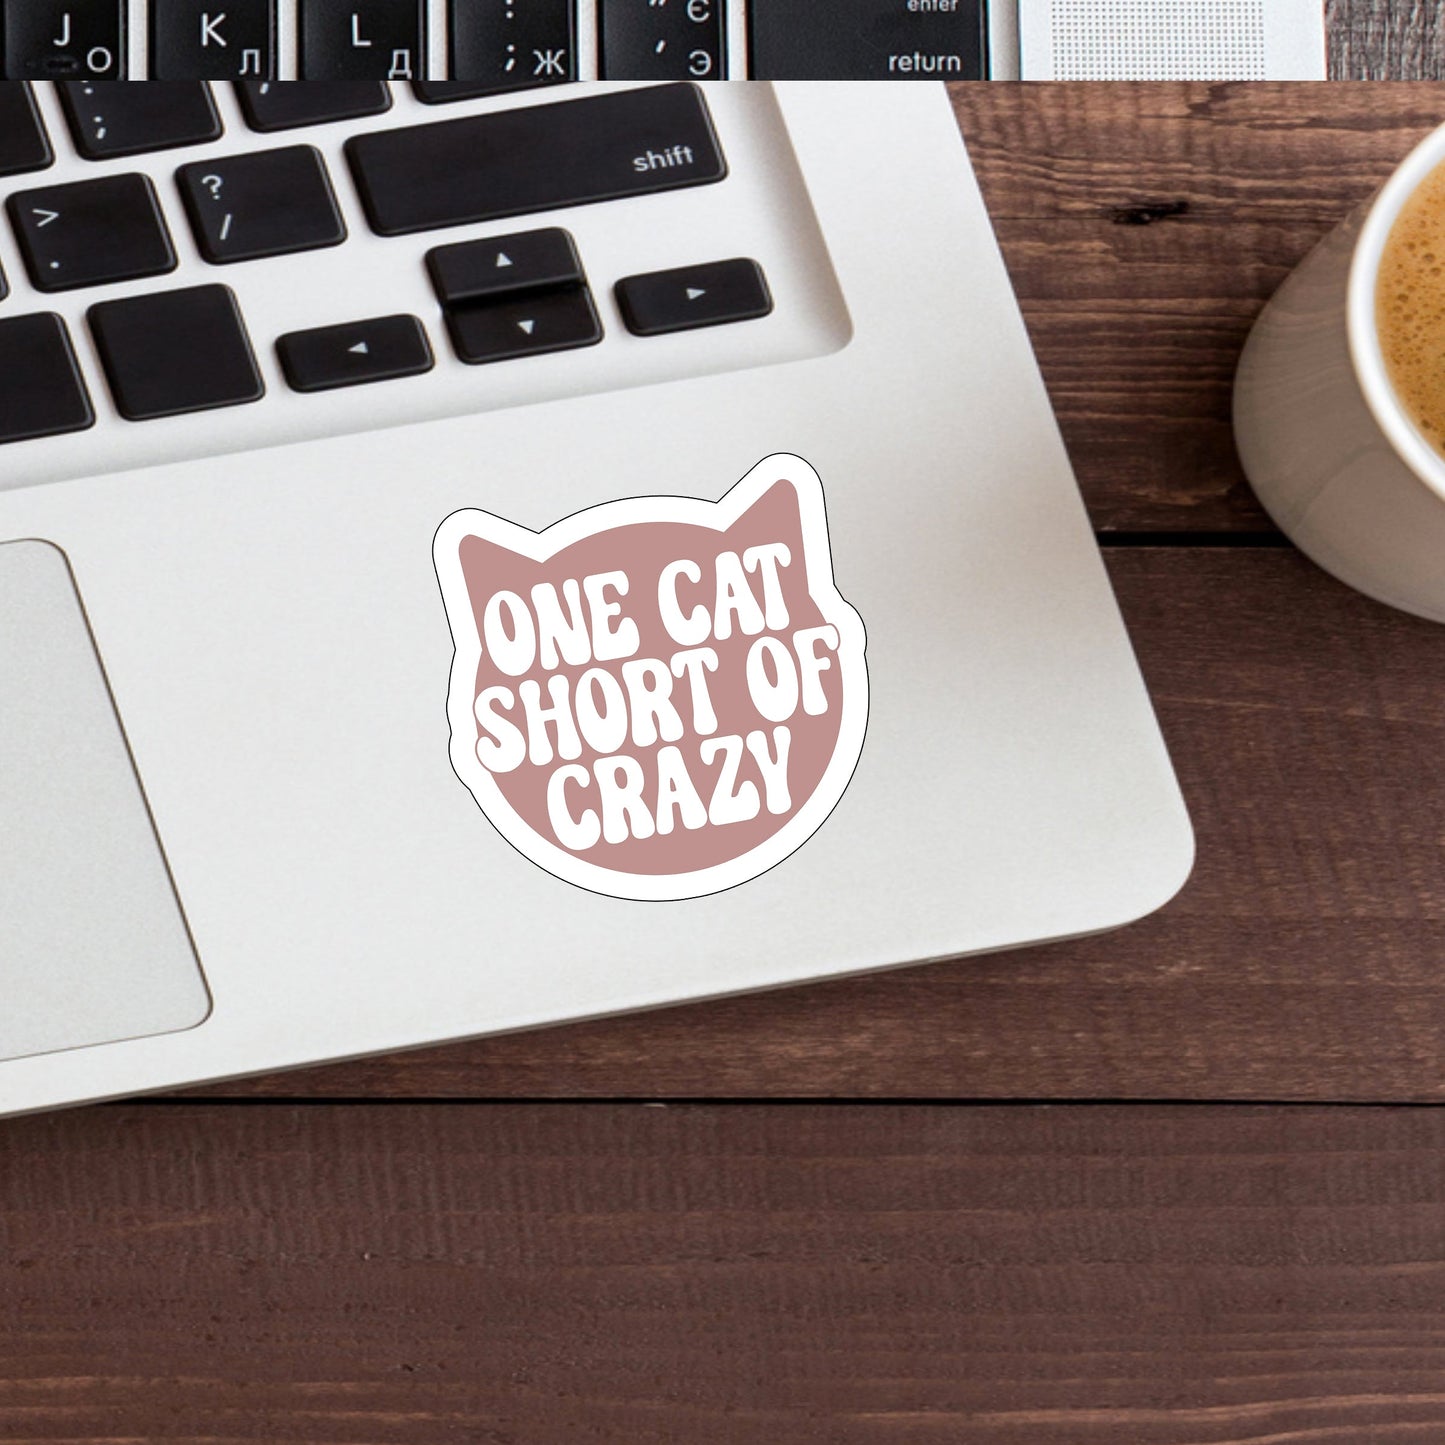 One cat short of crazy  Sticker,  Vinyl sticker, laptop sticker, Tablet sticker